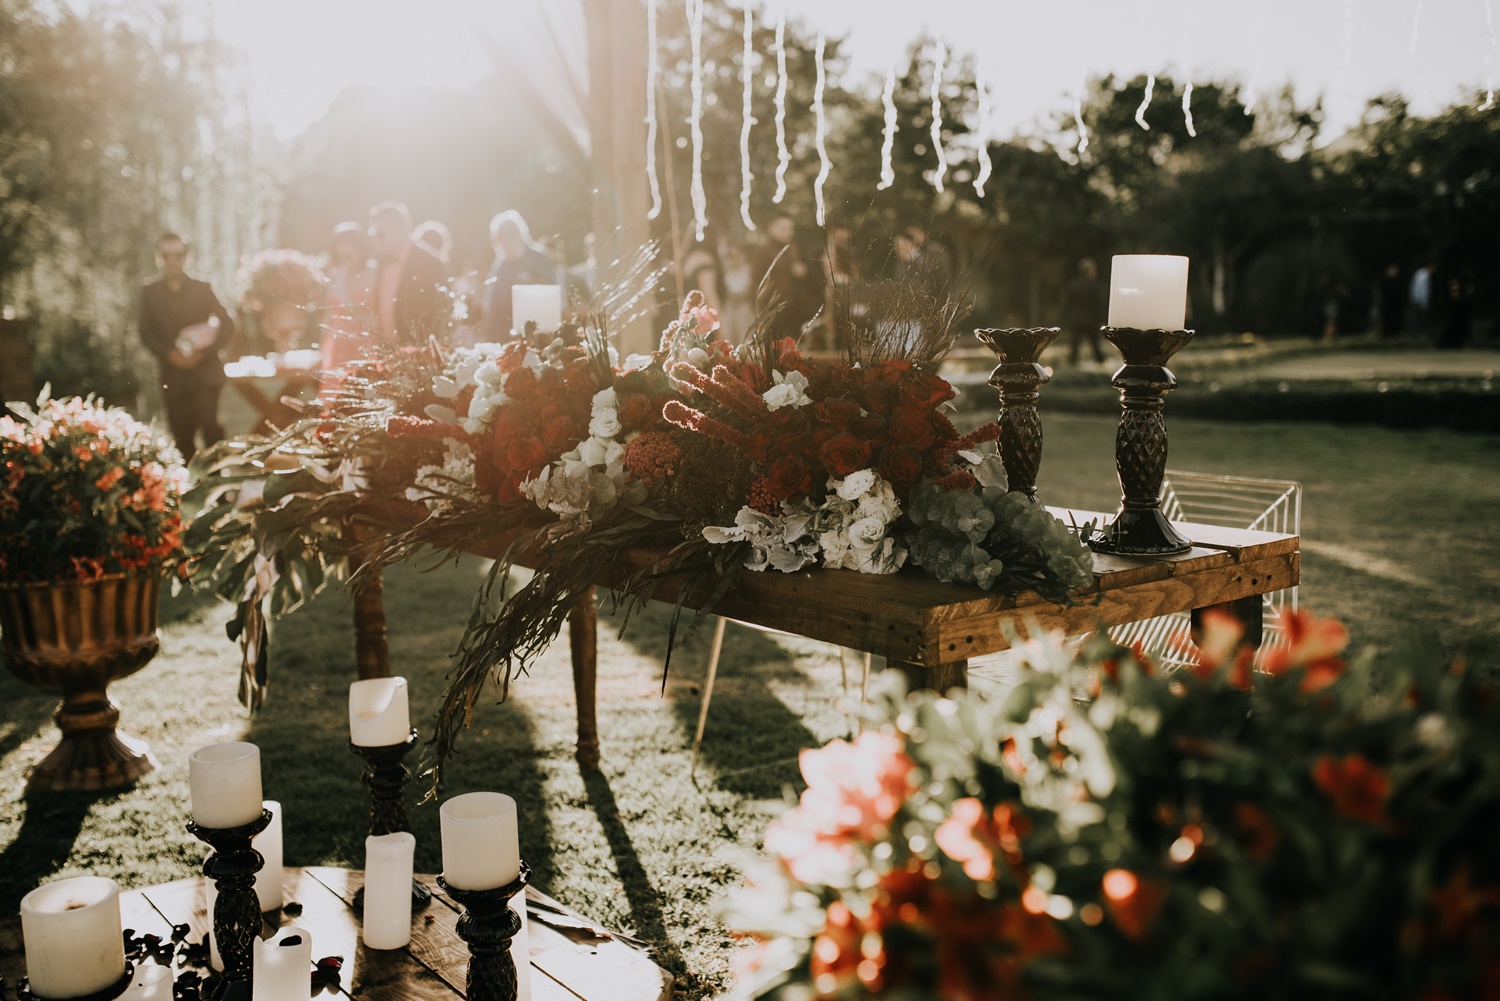 Kirchlich heiraten - Alle wichtigen Informationen von Hochzeits Deko bis Catering